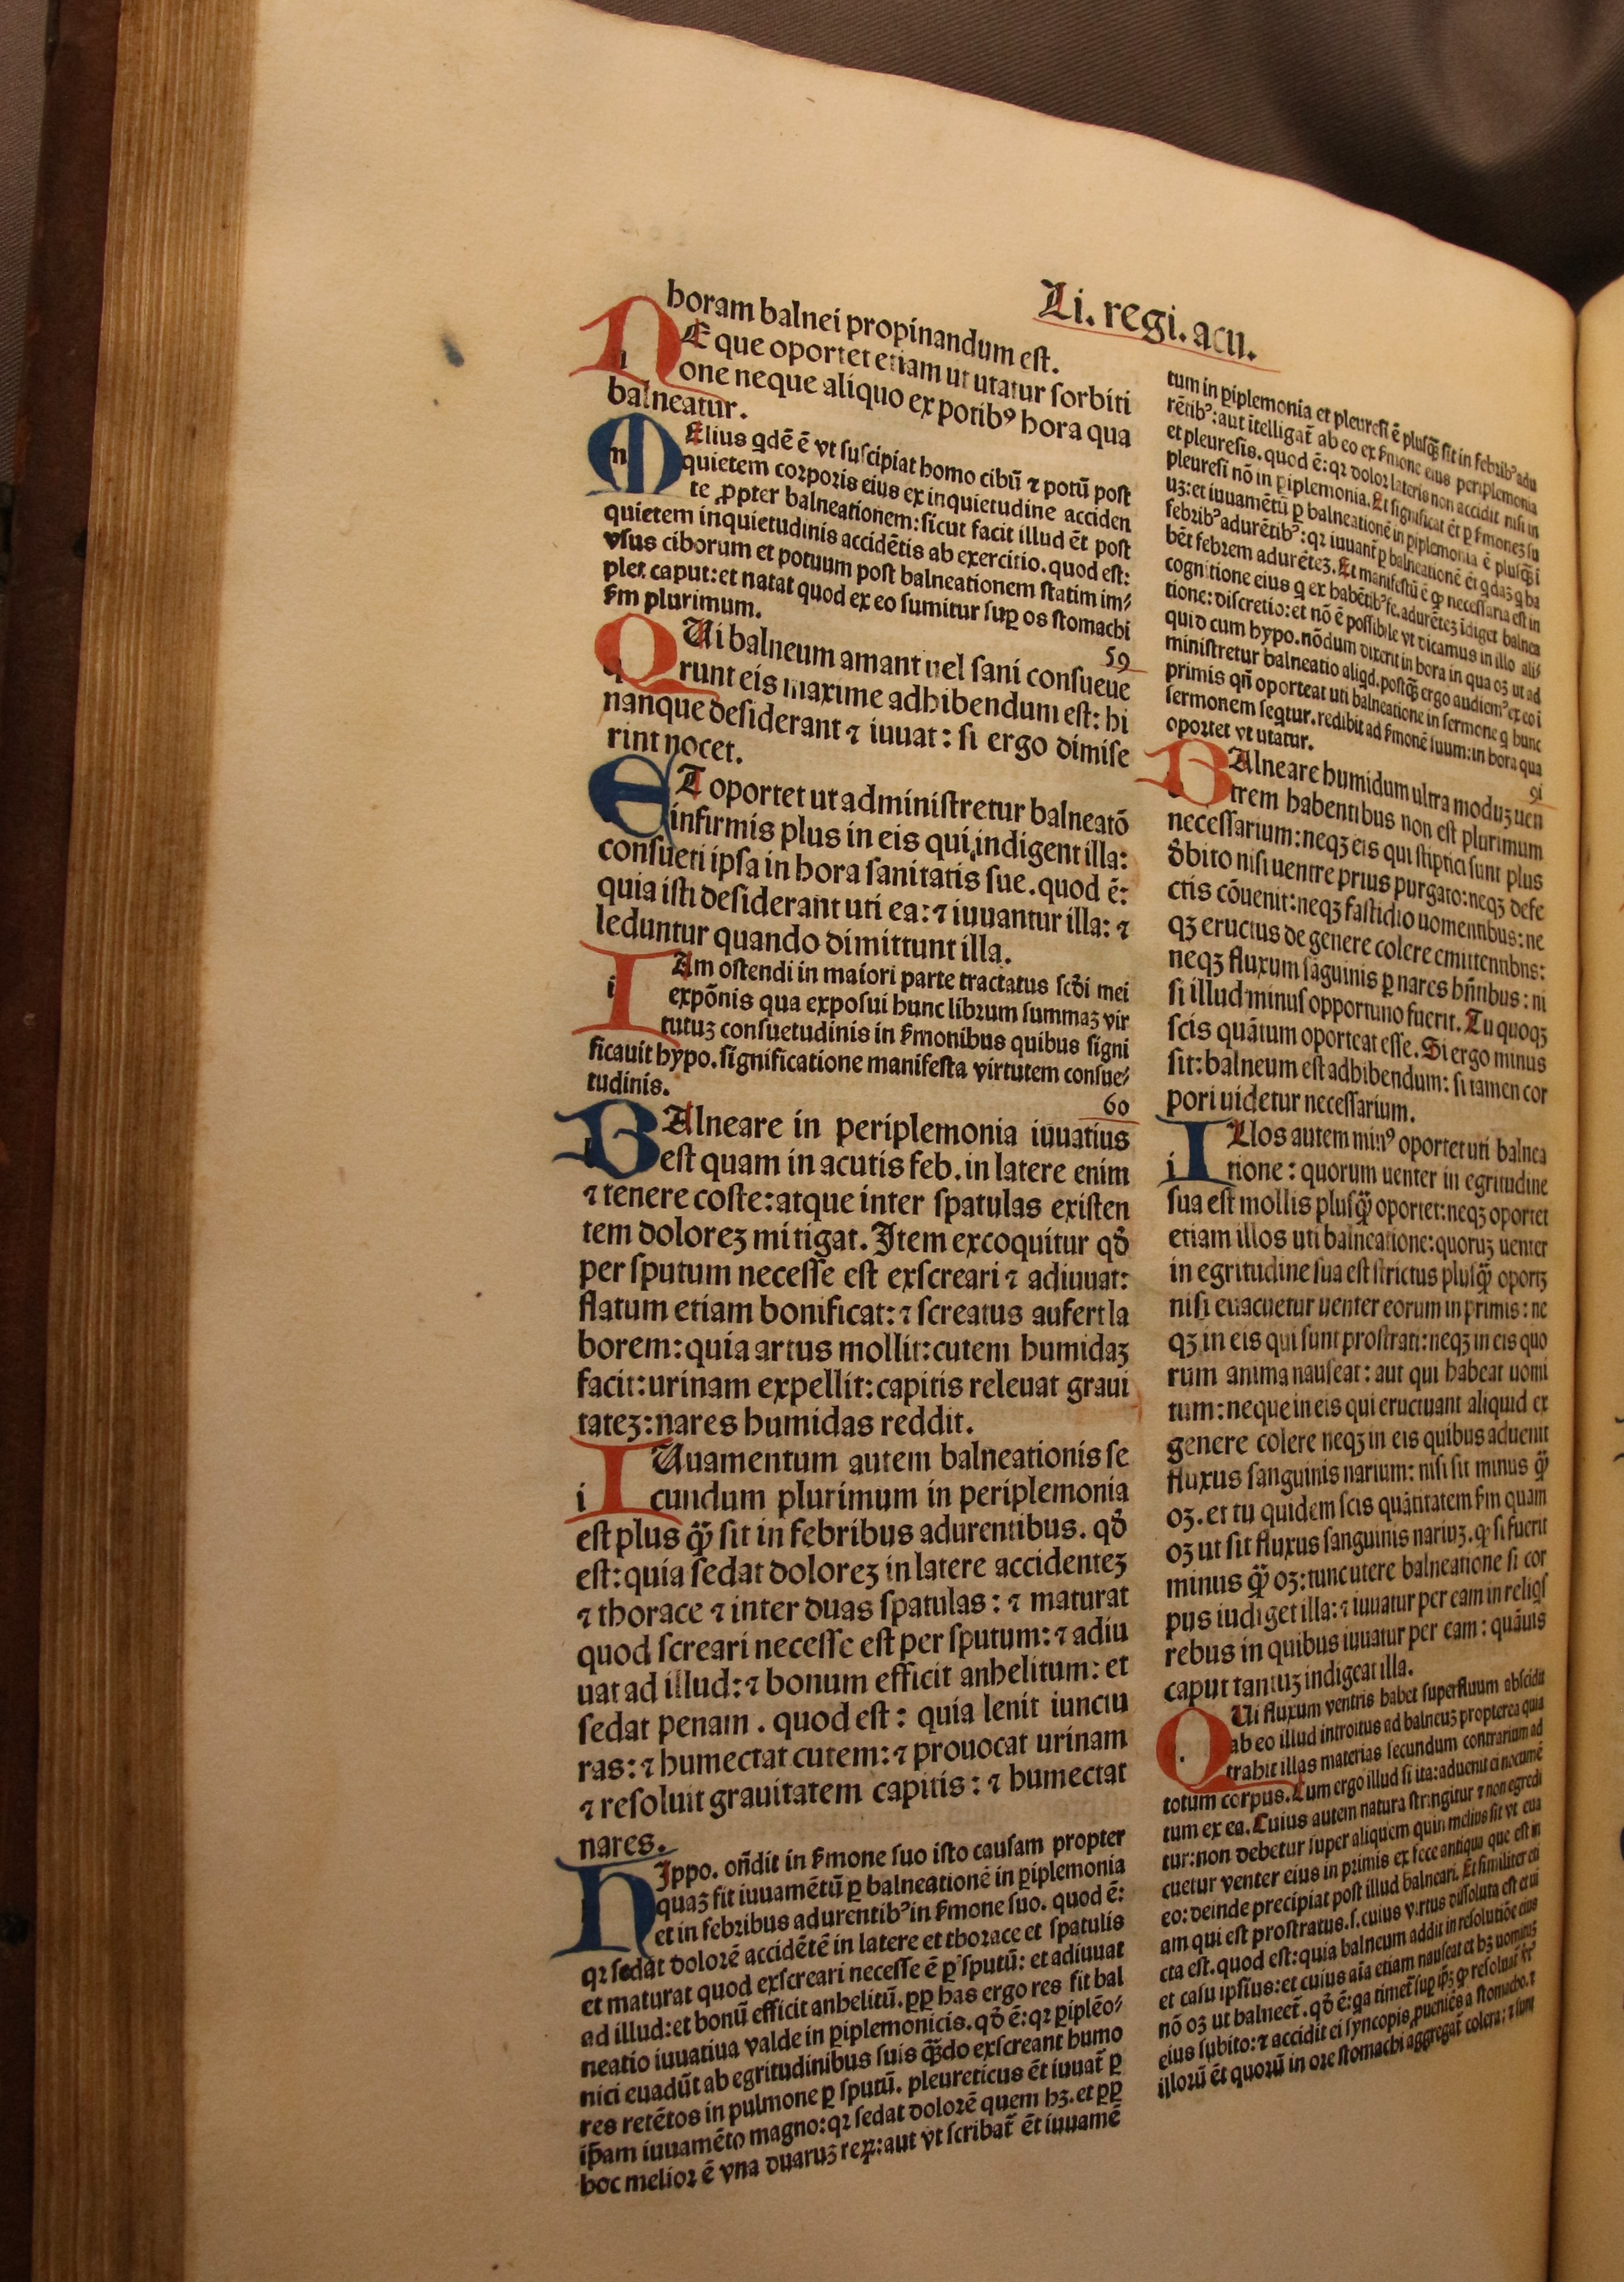 Ill. 1: Articella, een verzameling medische werken gedrukt door Baptista de Tortis in Venetie in 1487 Ill. 1: Articella, a collection of medical works printed by Baptista de Tortis in Venice in 1487